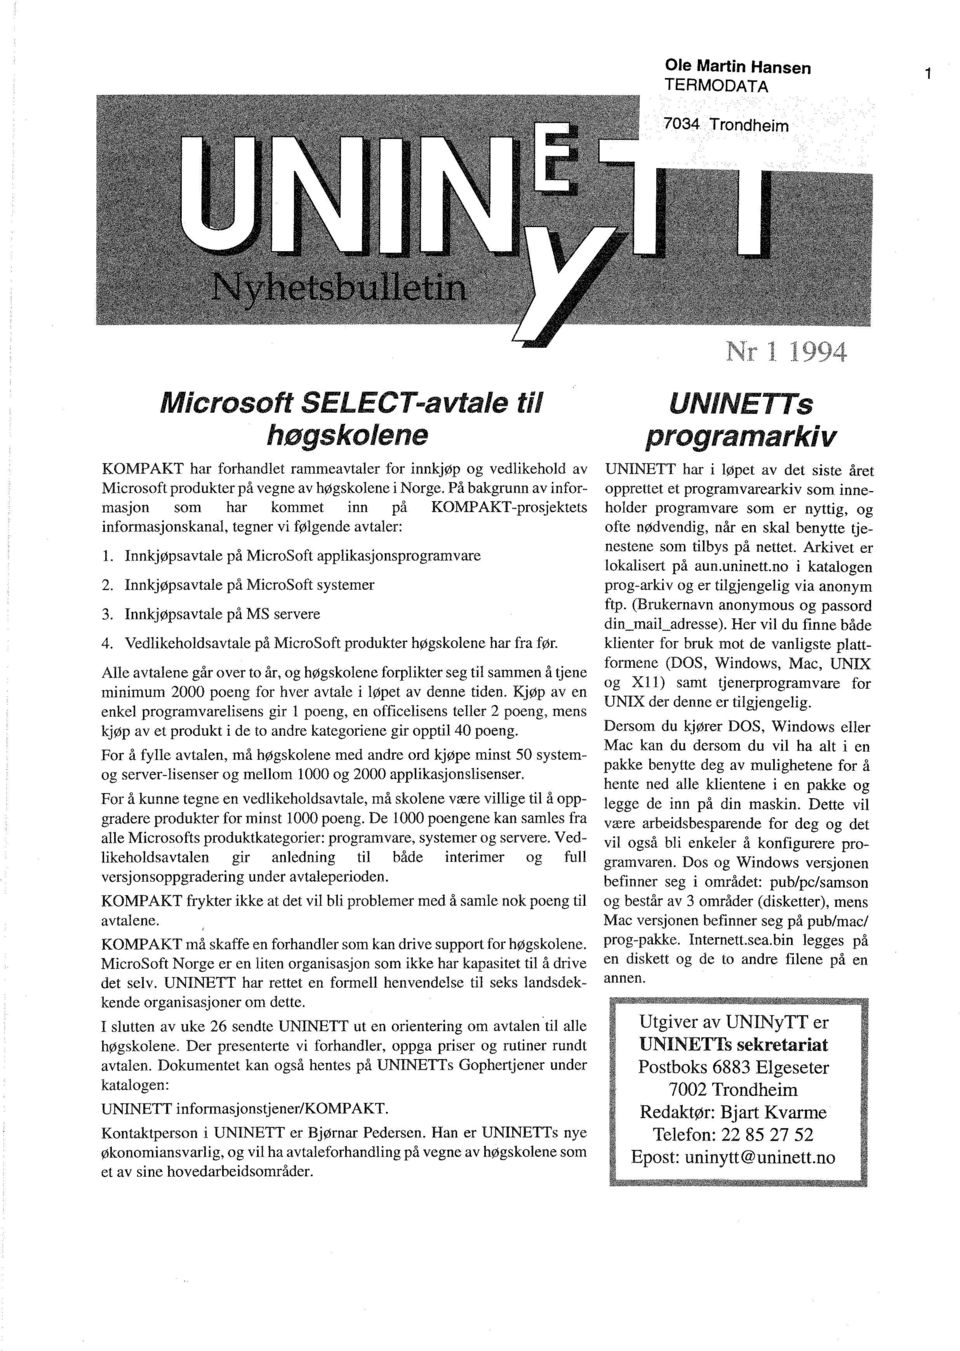 Innkjøpsavtale på MicroSoft systemer 3. Innkjøpsavtale på MS servere 4. Vedlikeholdsavtale på MicroSoft produkter høgskolene har fra før.